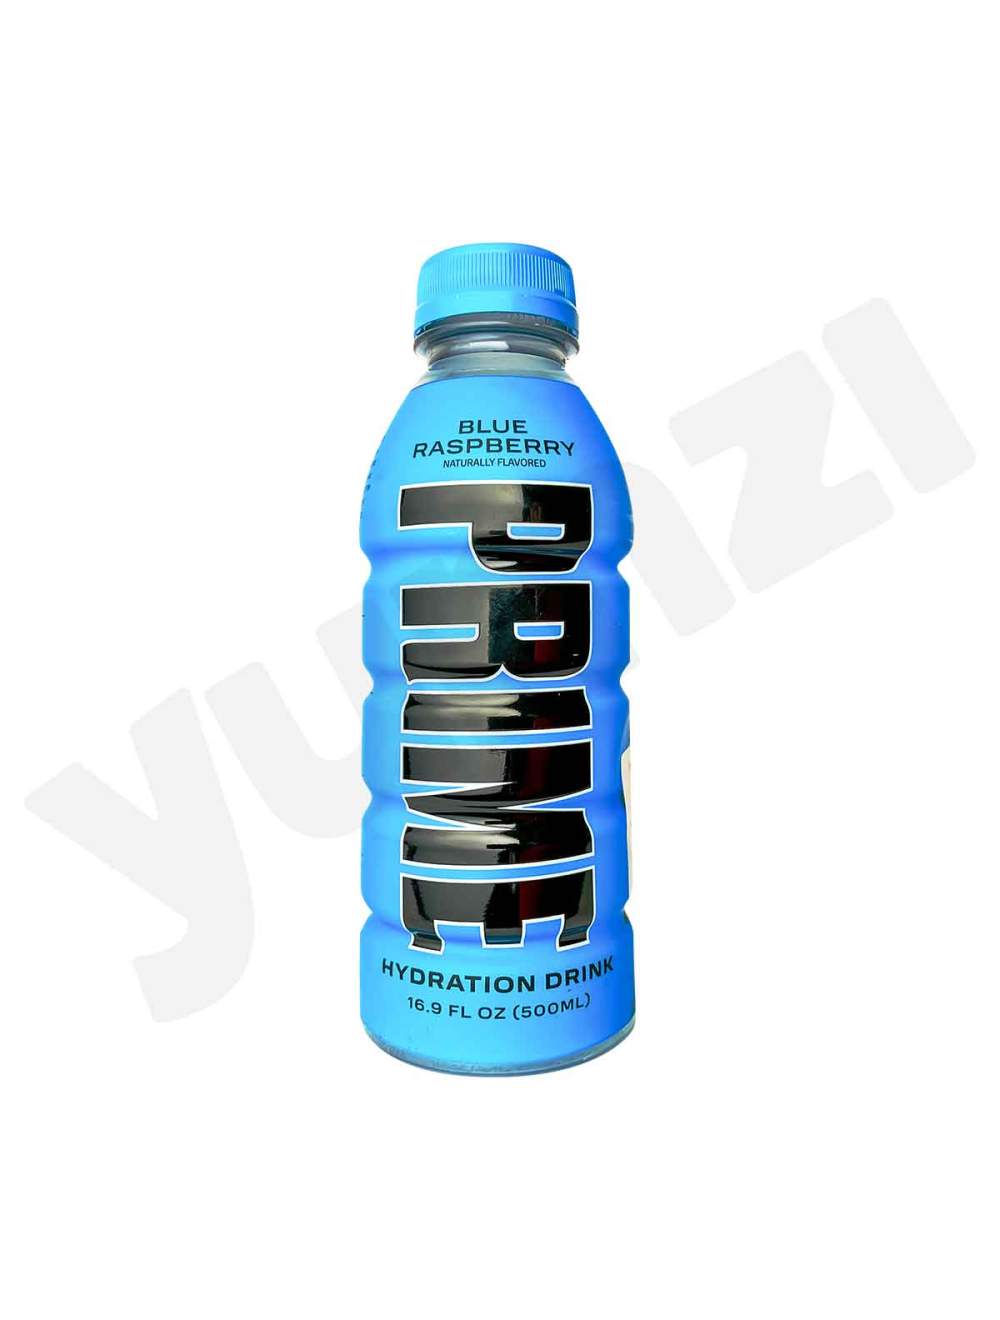 Achat PRIME - ENERGY DRINK BLUE RASPBERRY de qualité premium